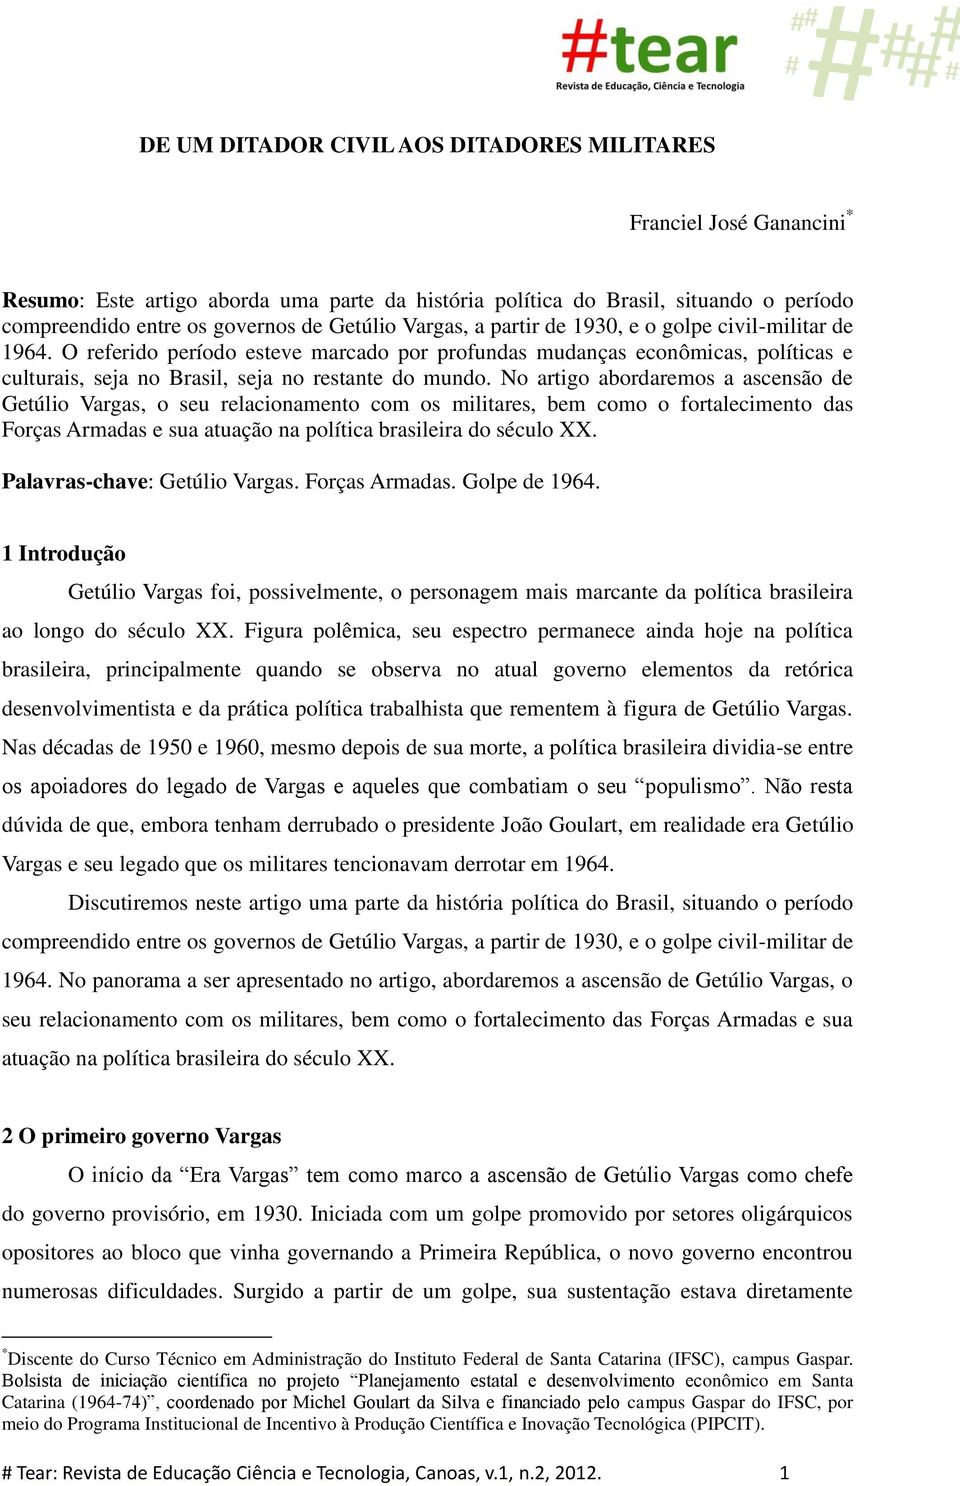 No artigo abordaremos a ascensão de Getúlio Vargas, o seu relacionamento com os militares, bem como o fortalecimento das Forças Armadas e sua atuação na política brasileira do século XX.